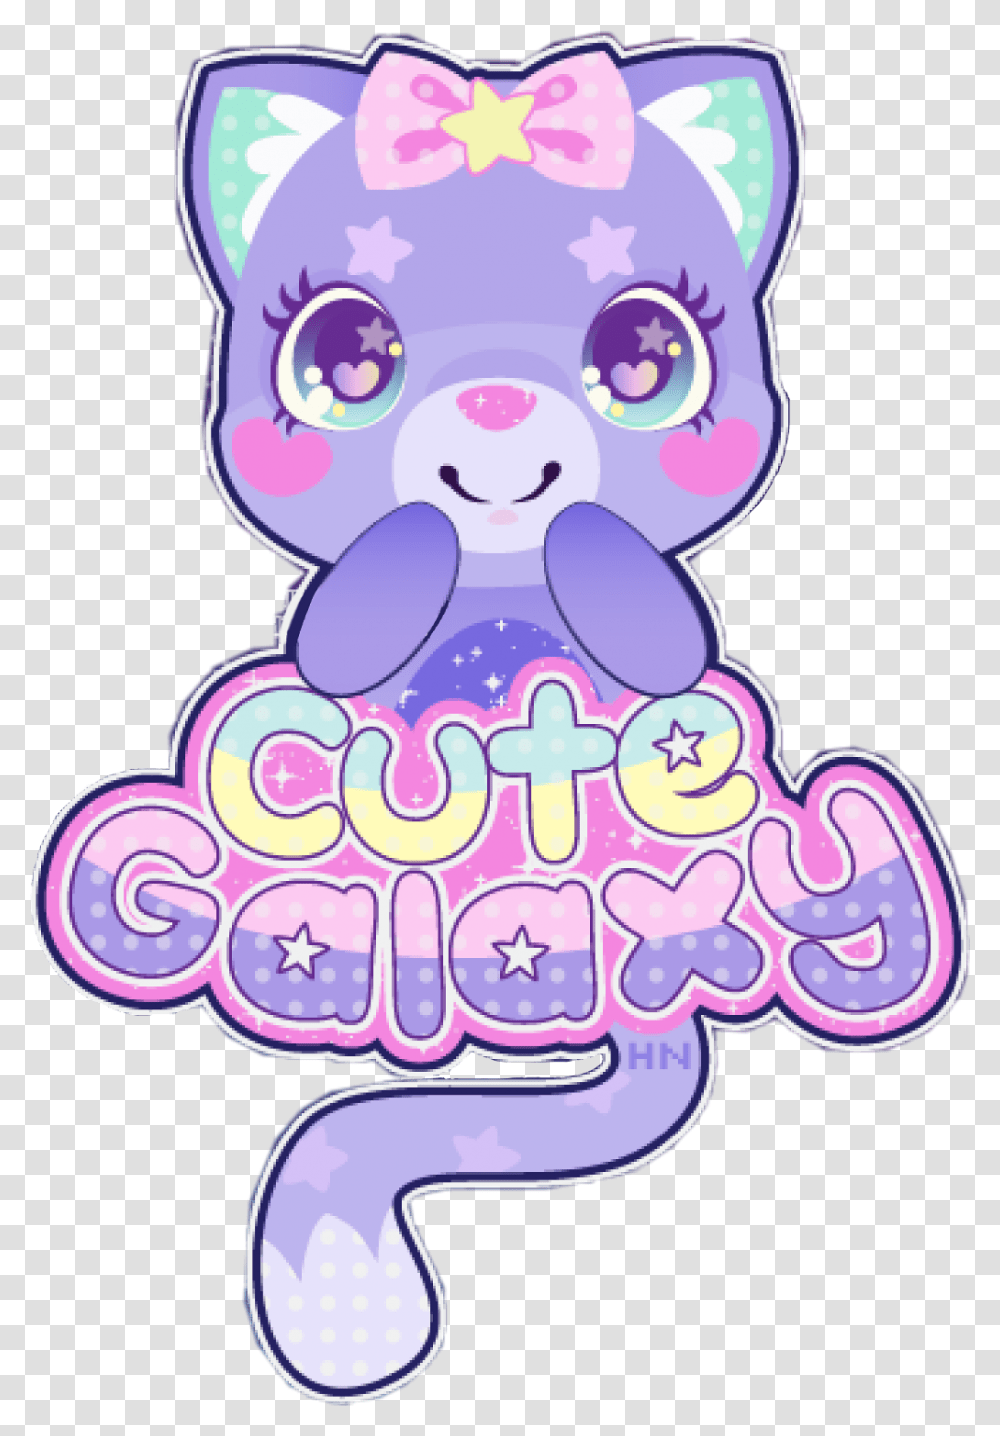 Galaxy Cute Kawaii Cat Cartoon Anime Chibi Star Galaxy Cute Kawaii Cat Transparent Png